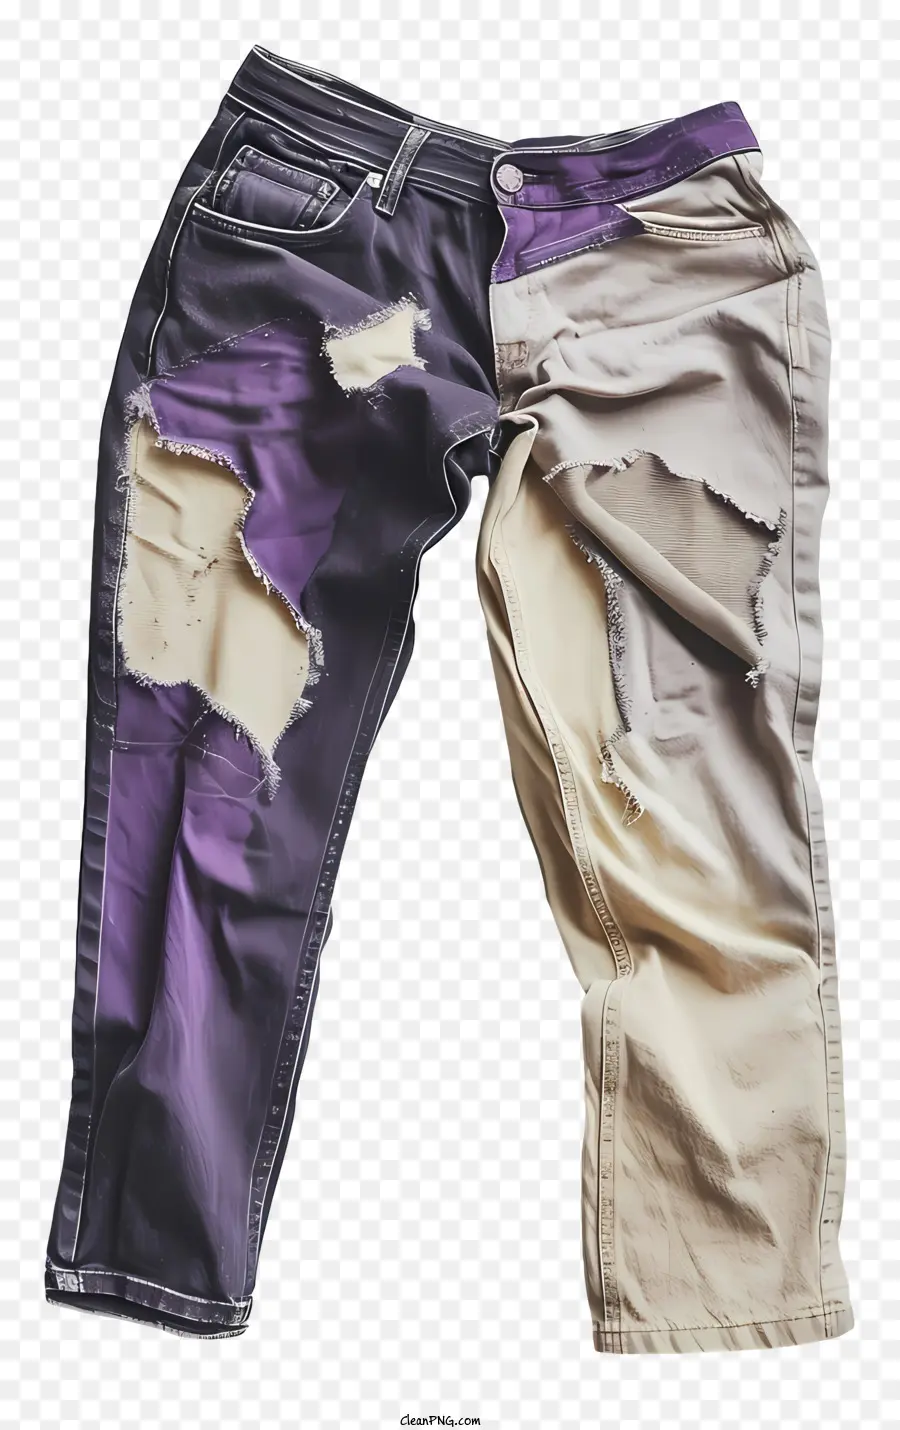 Quần jean rách quần jean rách quần jean với những lỗ hổng đau khổ quần jean - Quần jean rách với màu tím, màu be, đen